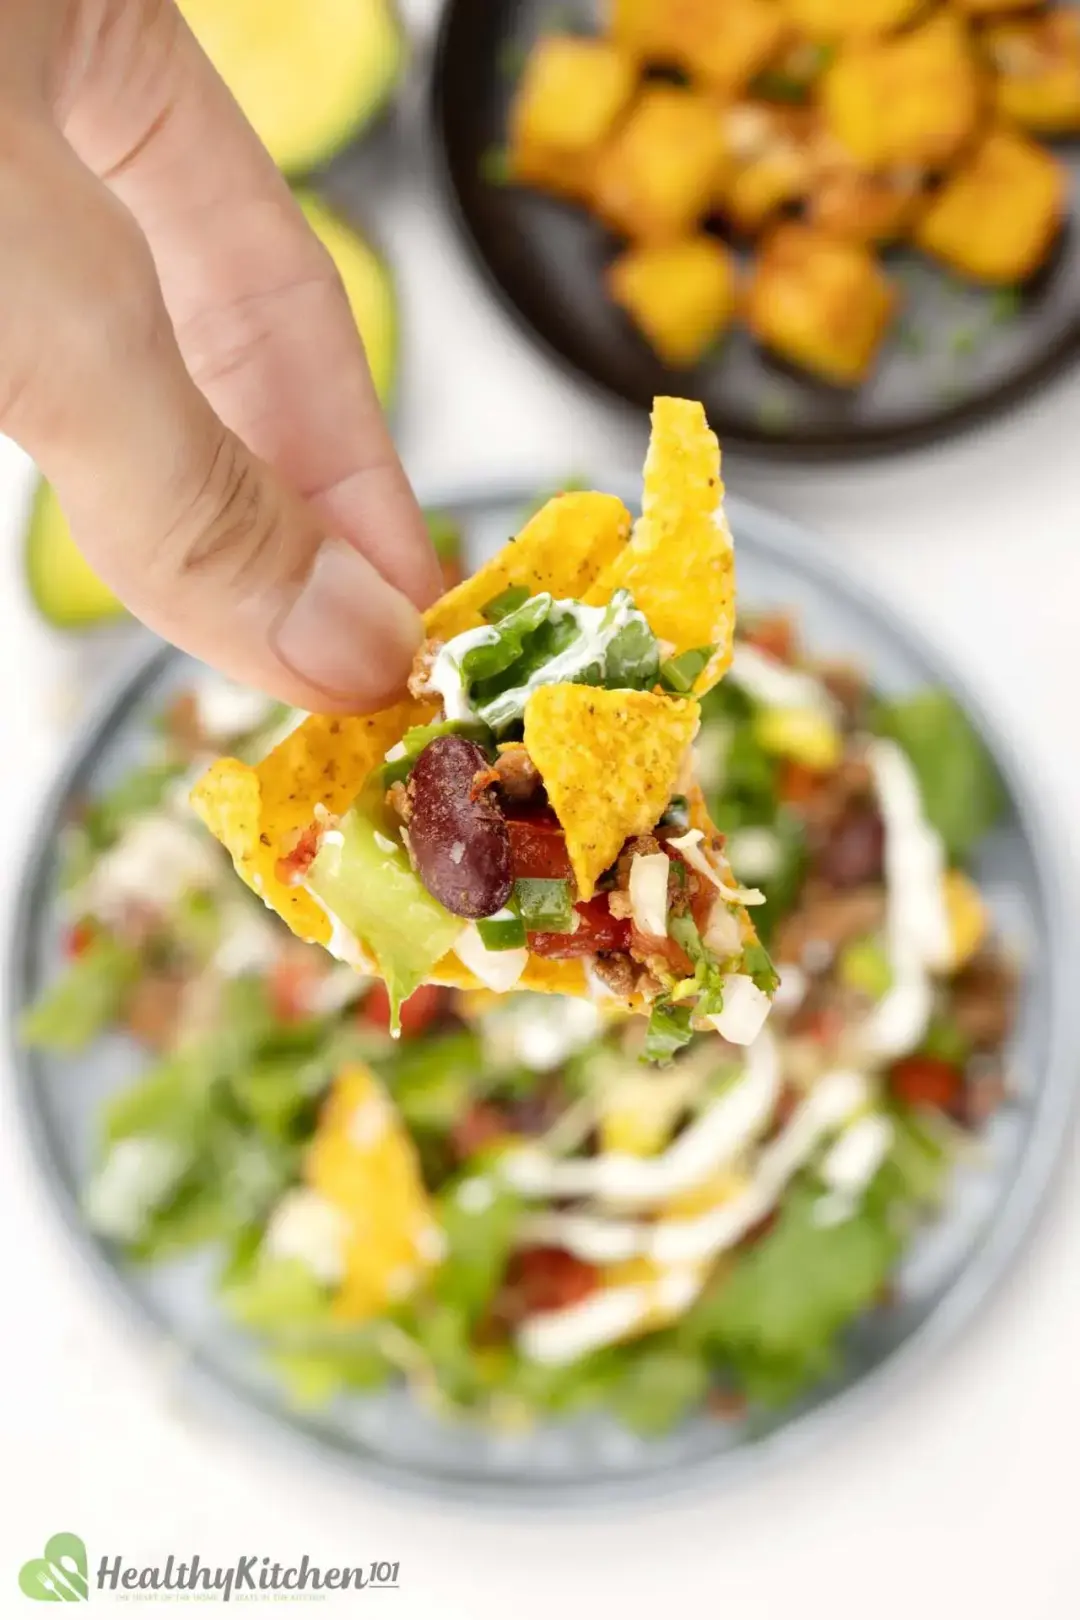 Is Taco Salad Healthy